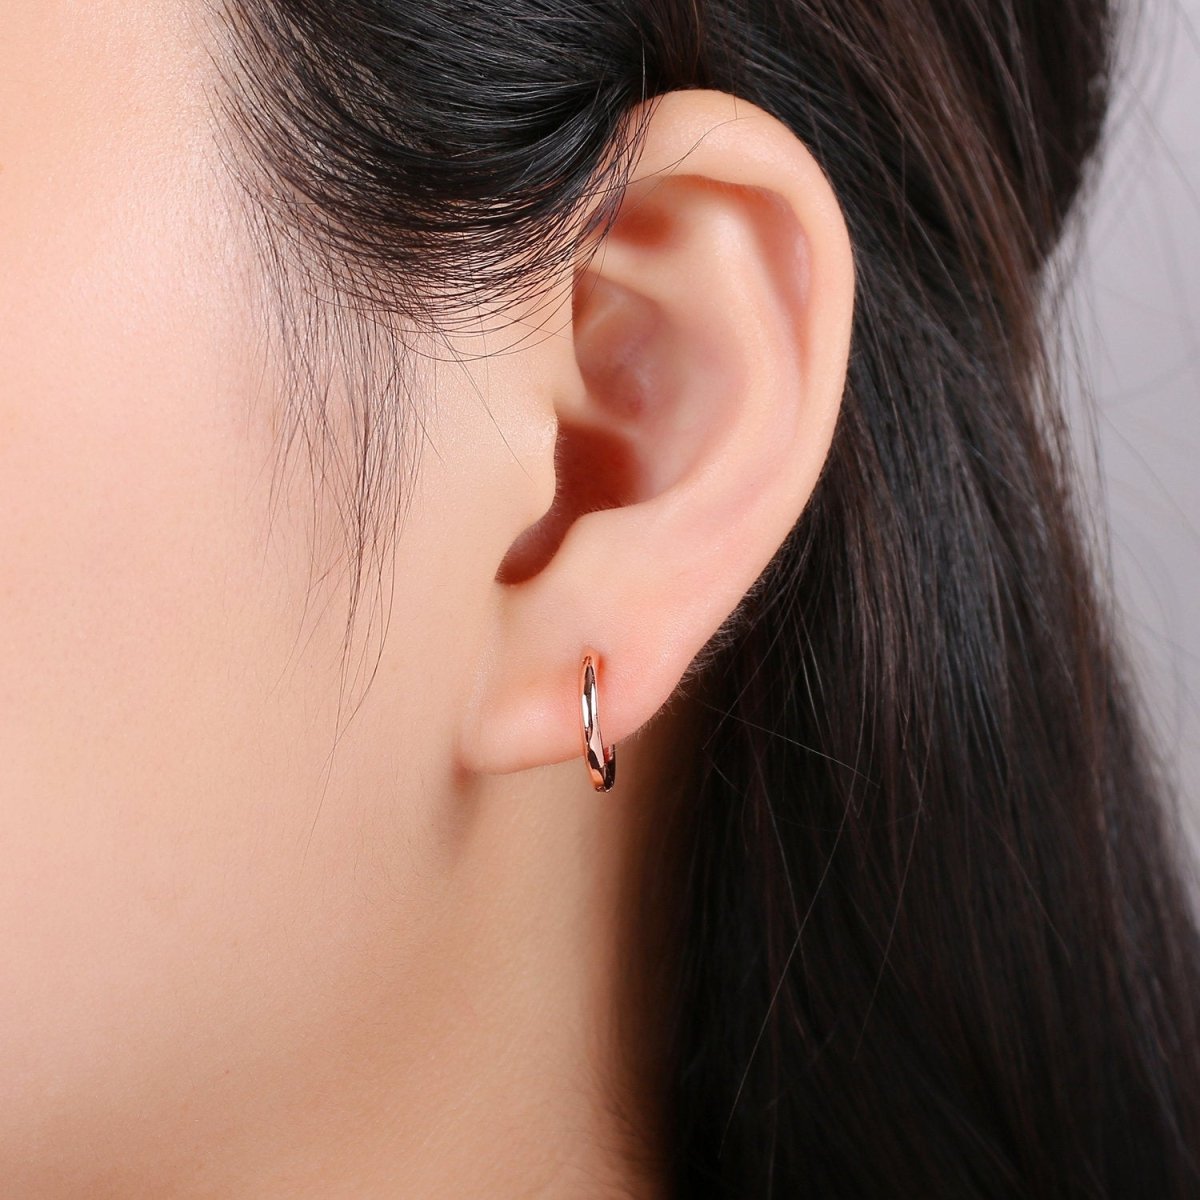 Dainty Hoop Earrings Pair/ Small Hoop Earring Minimalist Hoop Earring Silver Hoops Tiny Gold Hoop Ear Huggers/ Cartilage Earrings/ Rose Gold K-557 to K-560 - DLUXCA